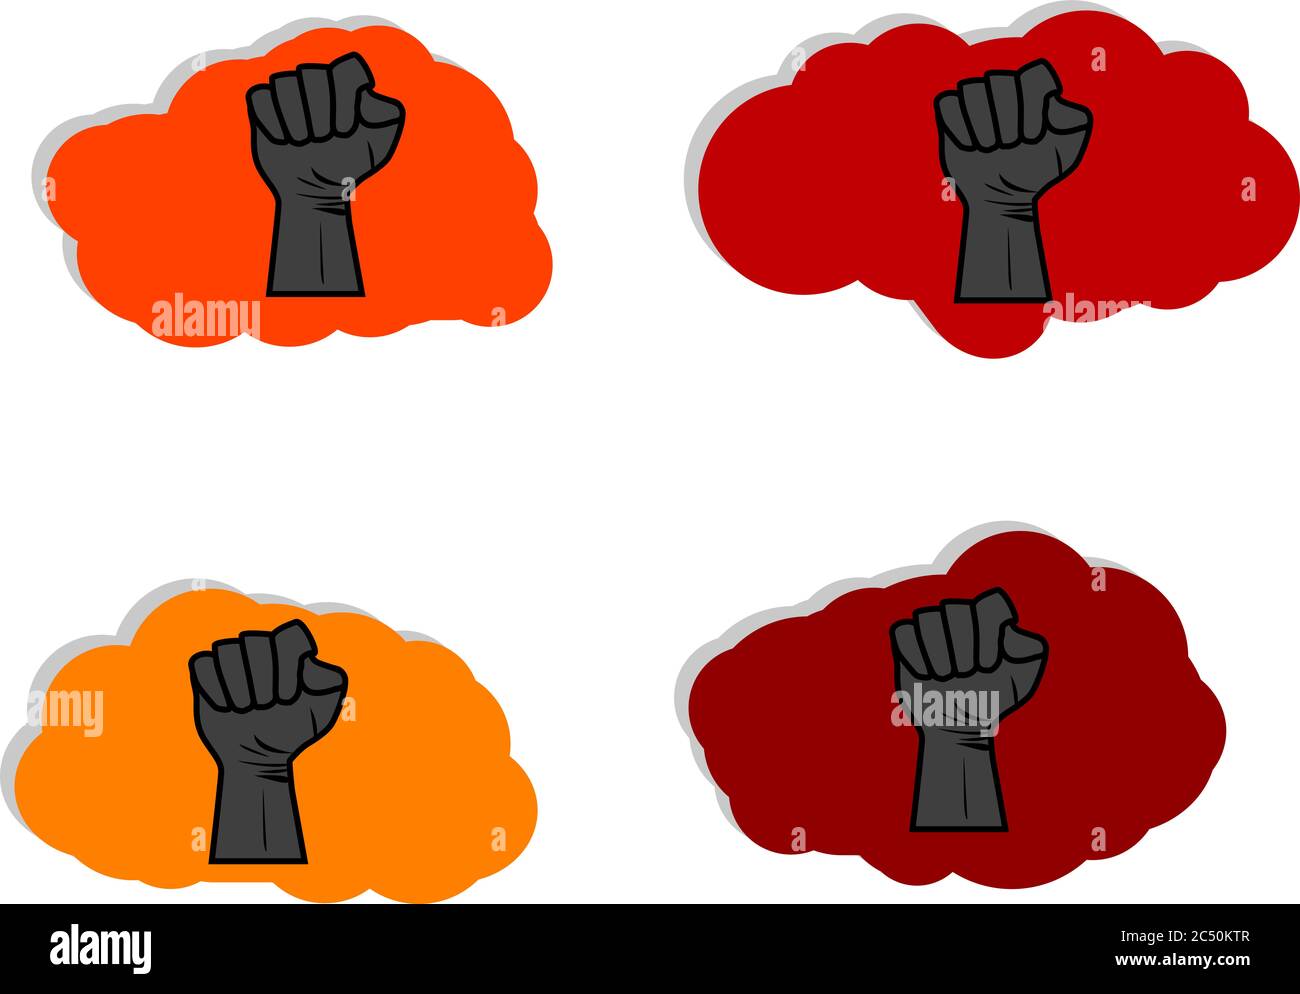 Le symbole de la main pour la vie noire est important pour protester aux États-Unis contre la violence envers les Noirs. Toutes les vies noires ont leur importance. Message de protestation. Vintage à la main s Banque D'Images